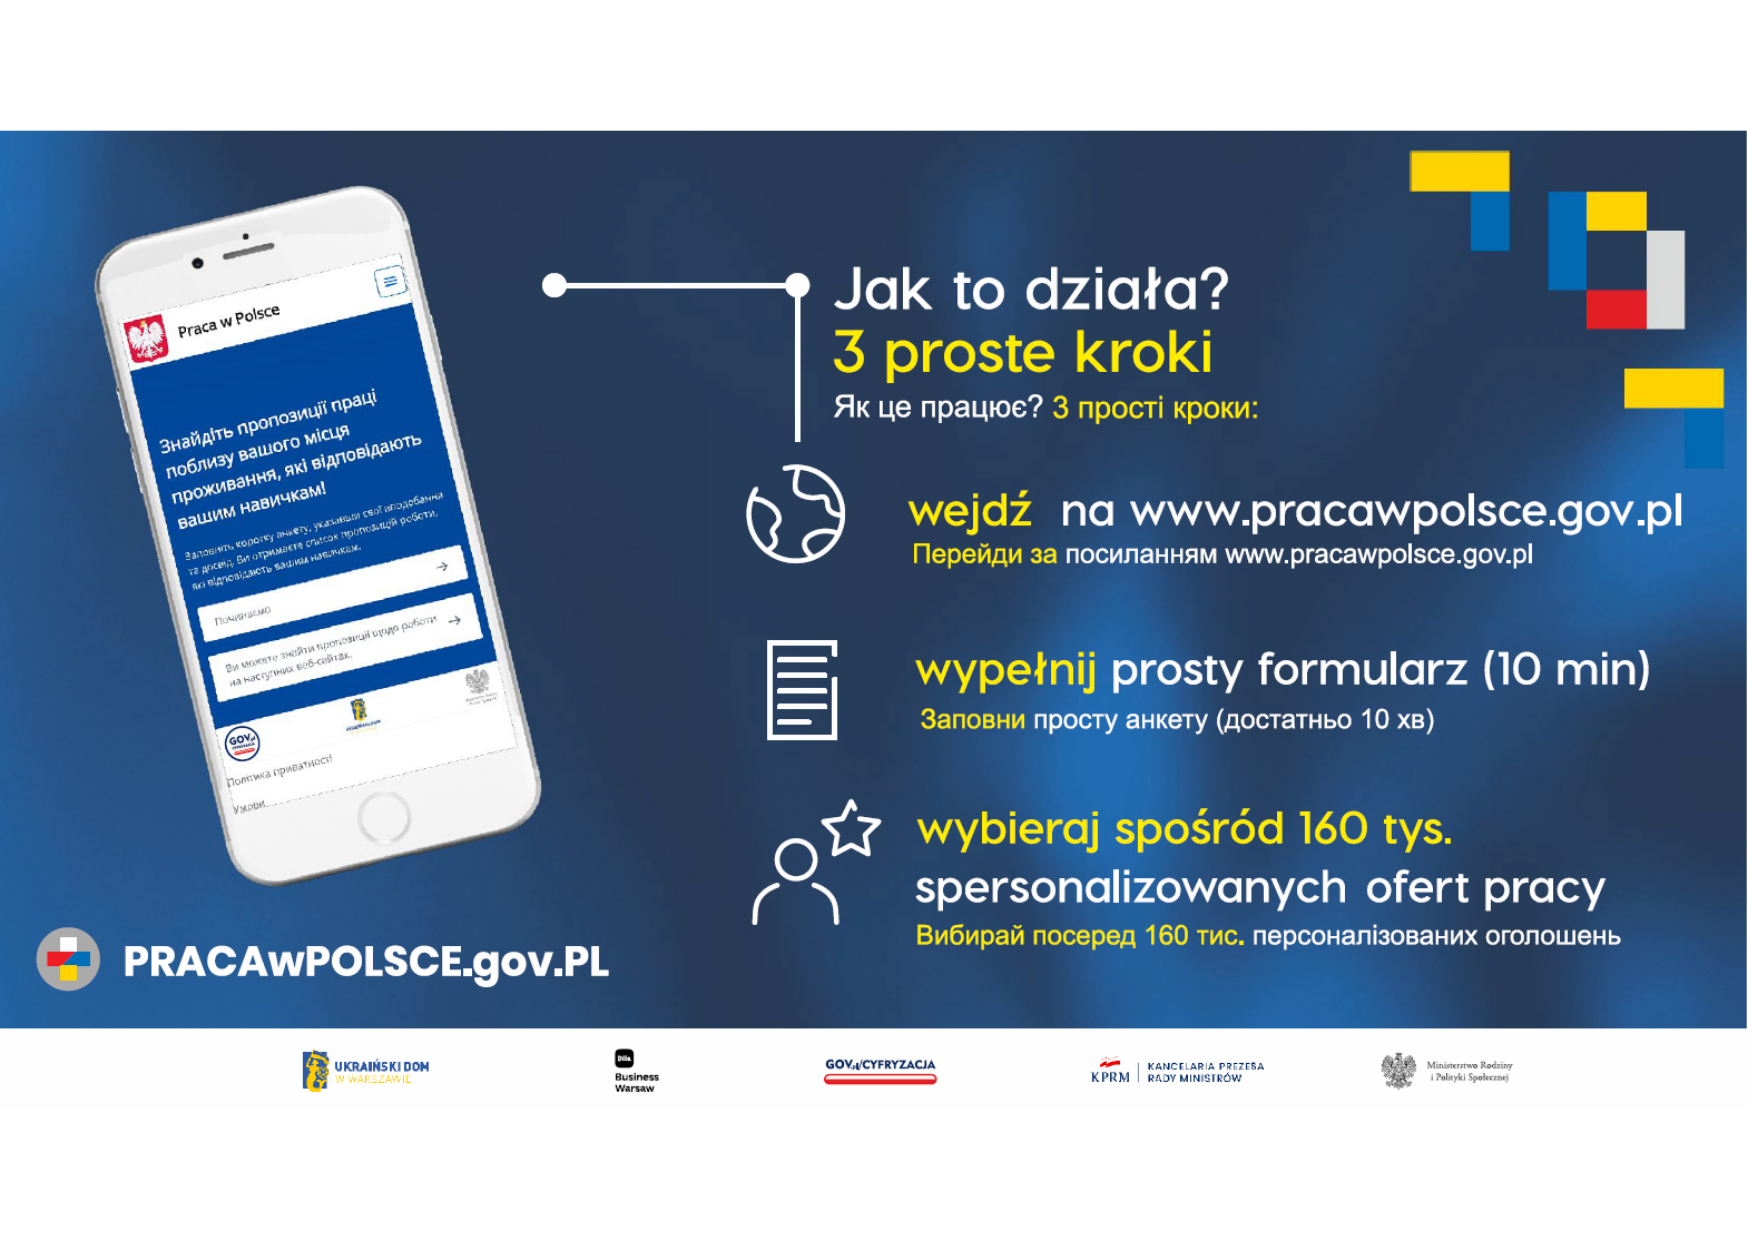 Ulotka promująca portal dla Obywateli Ukrainy pracawpolske.gov.pl